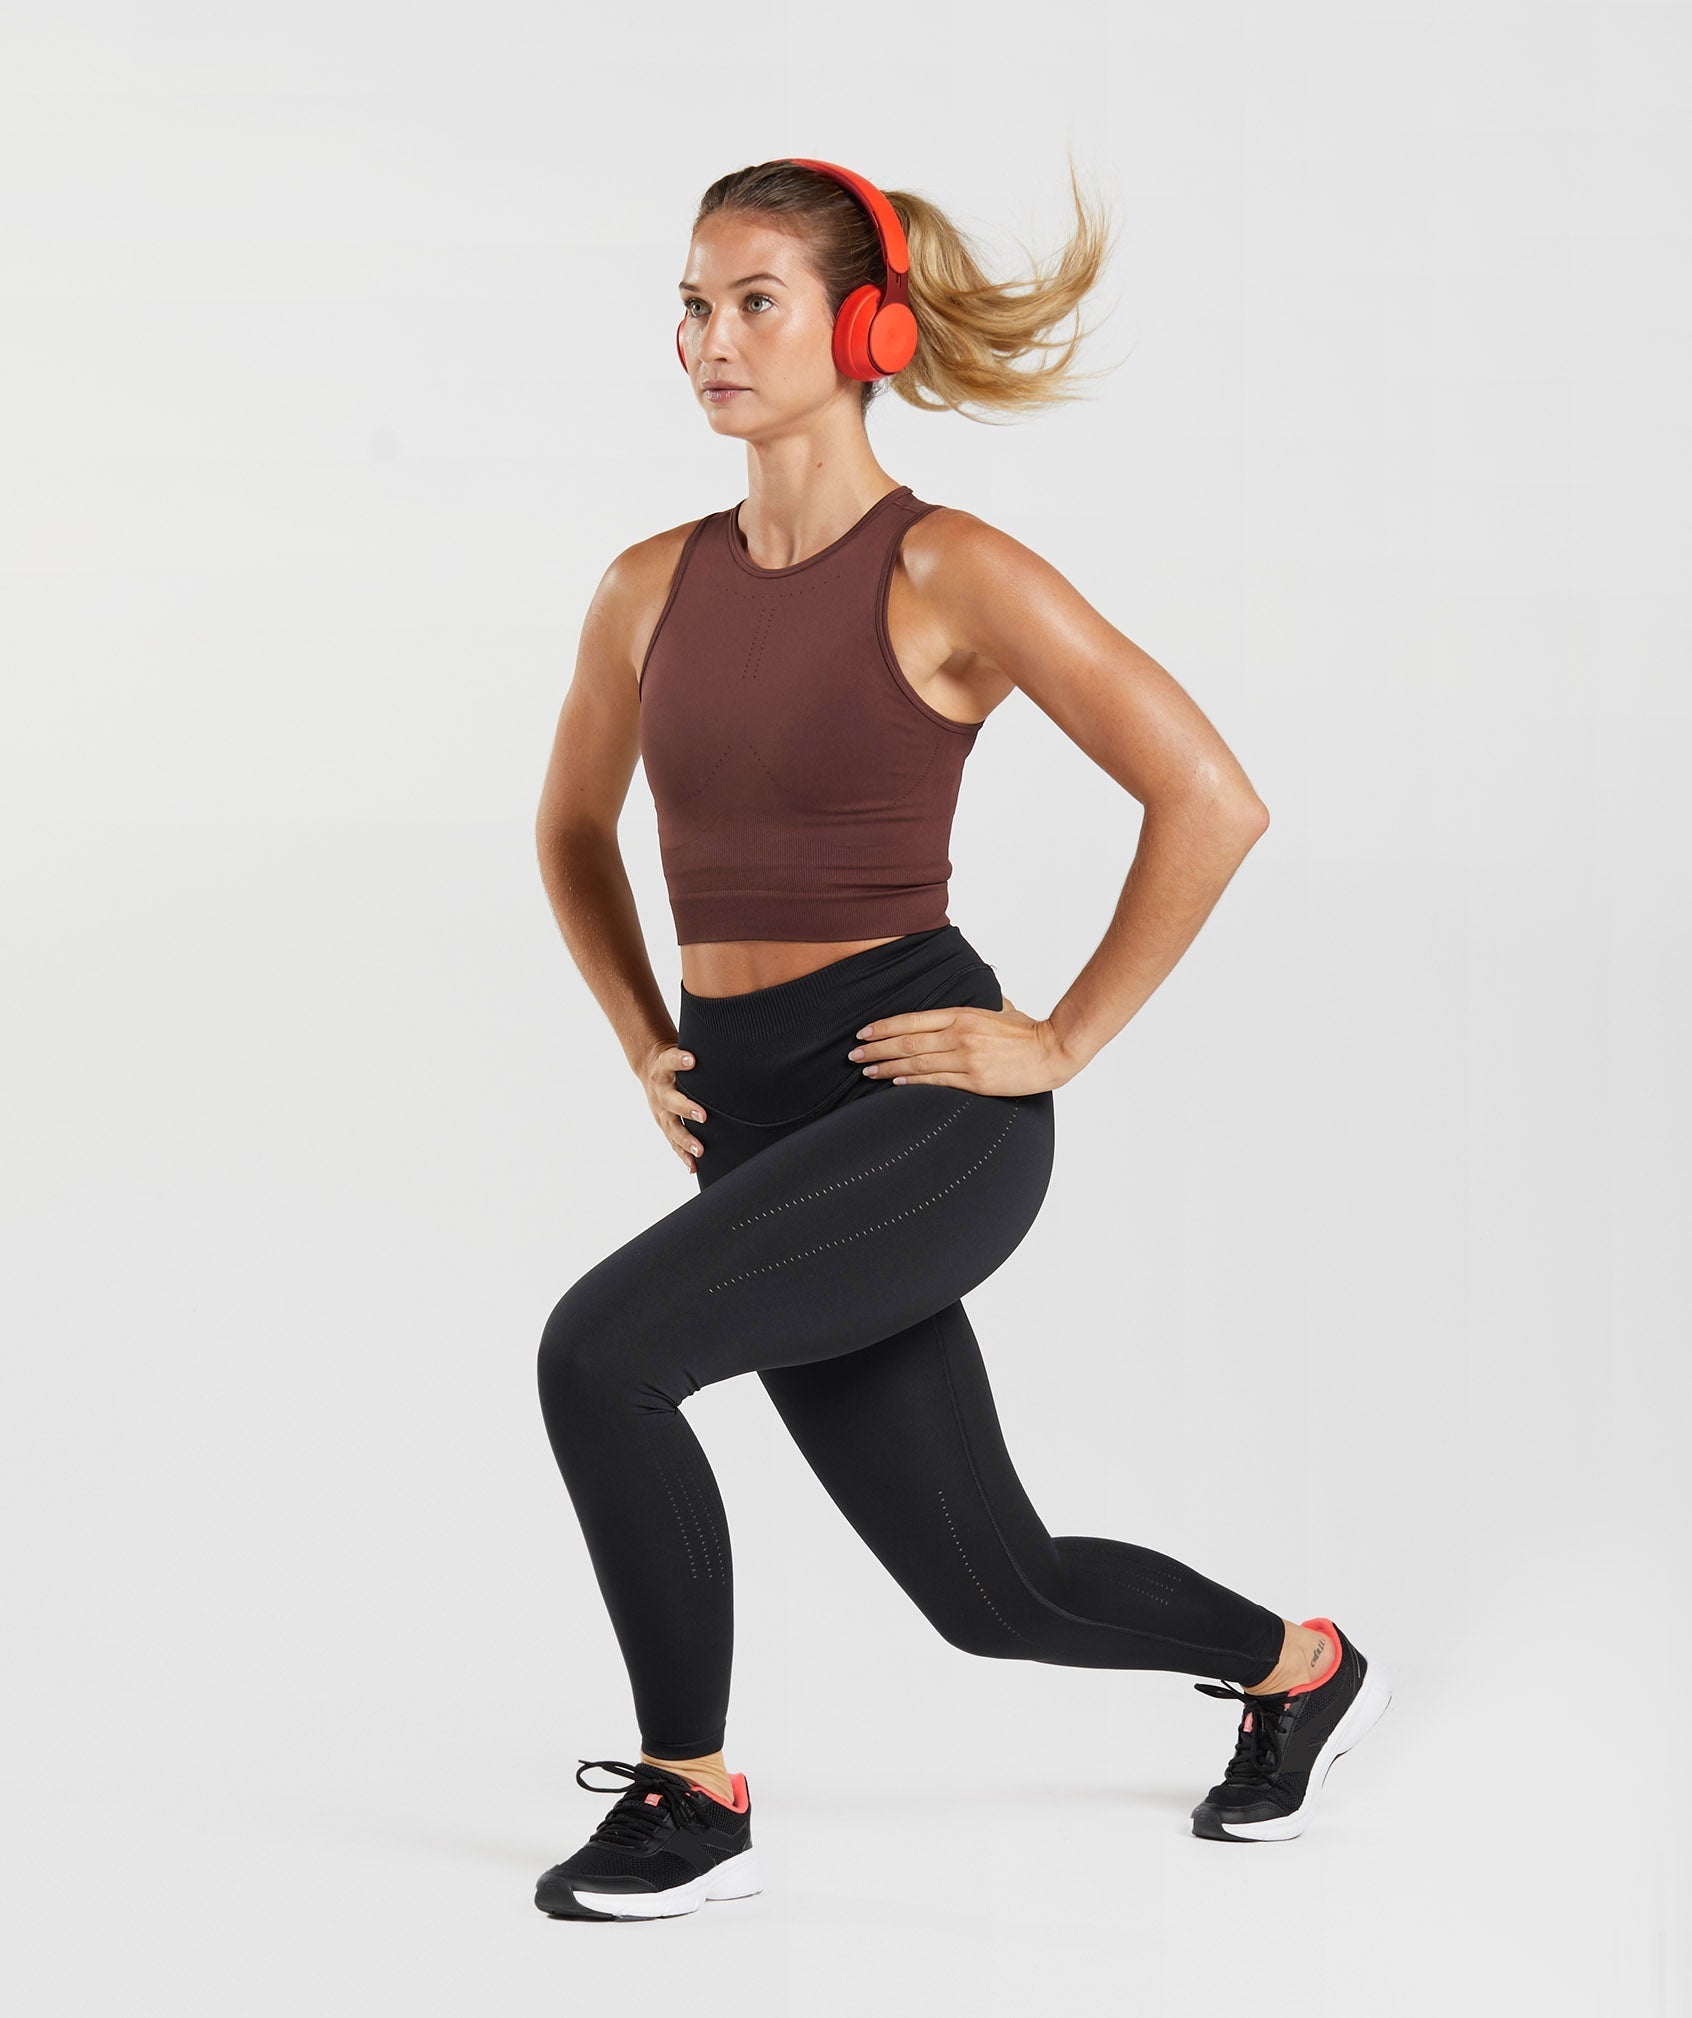 Manual Optimum Sweat Shaper Slim Women Leggings, For Gym at Rs 615